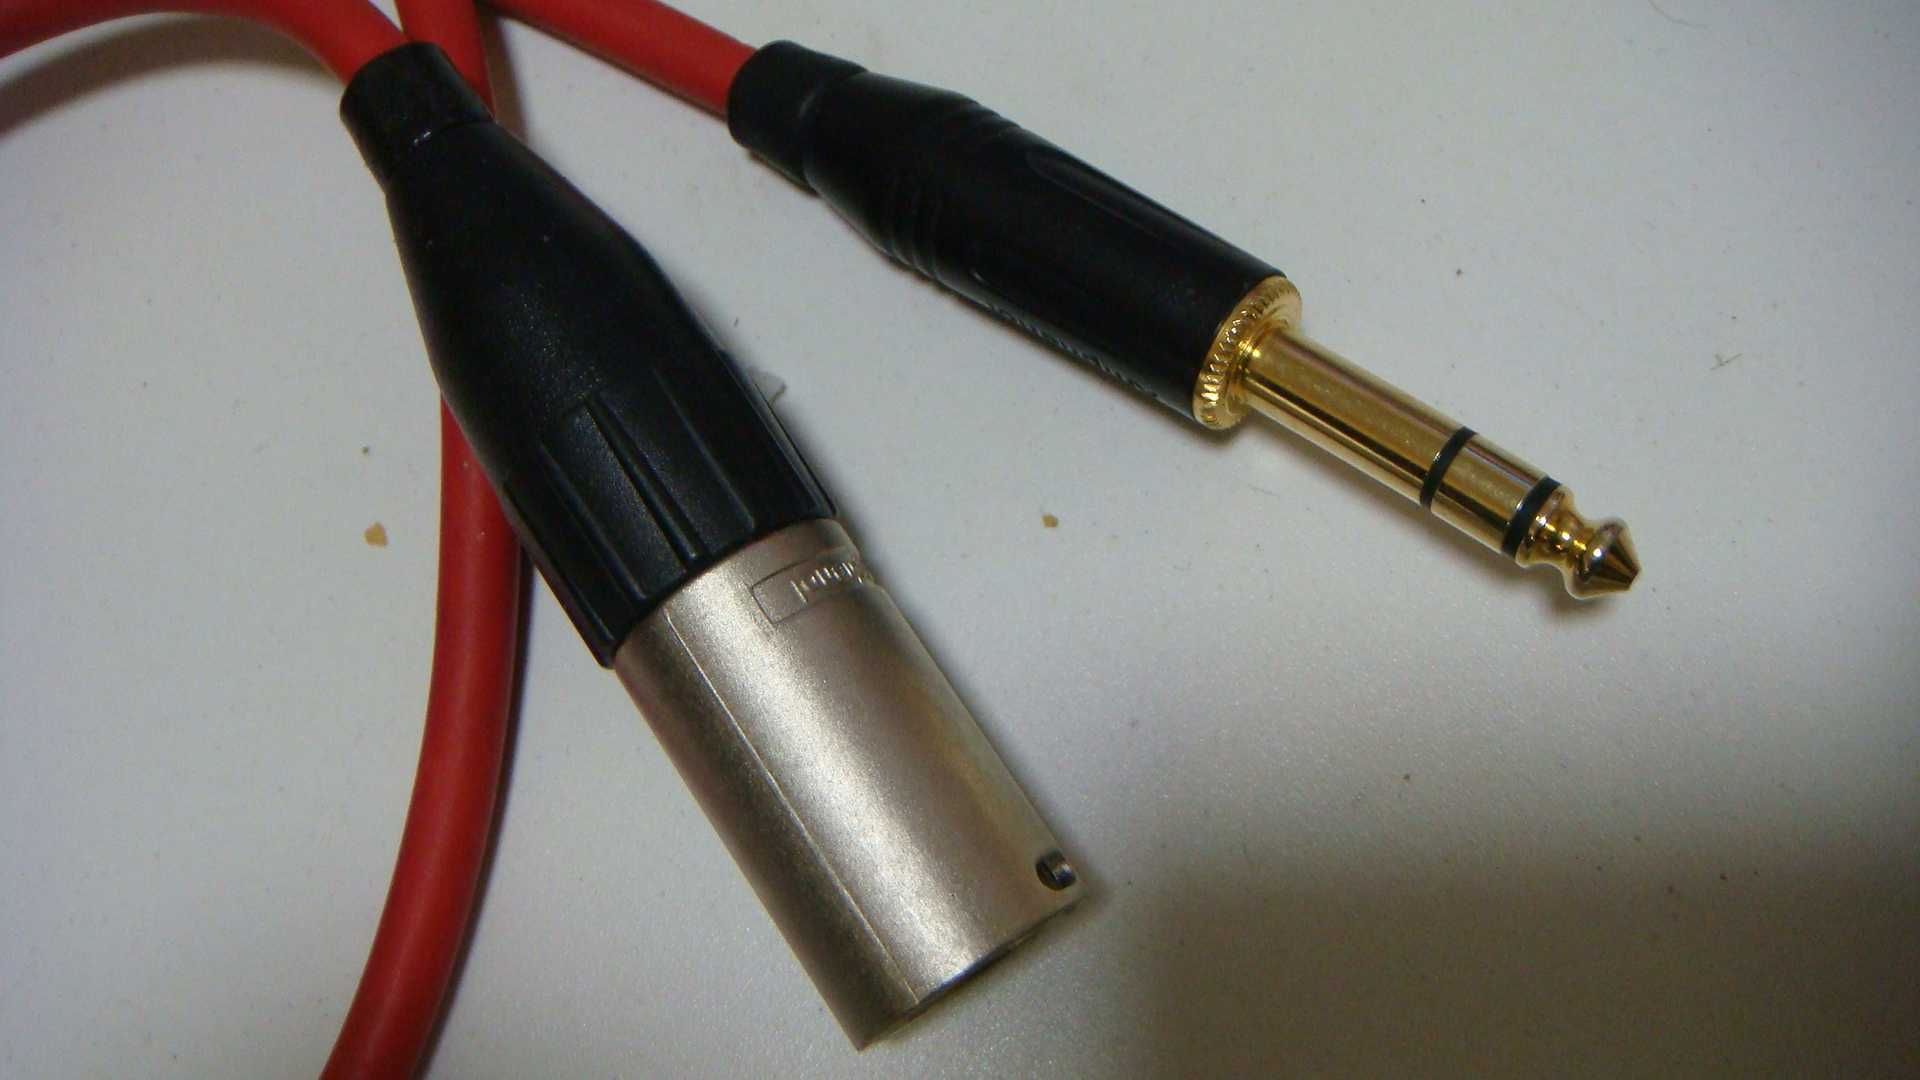 Микрофонный кабель